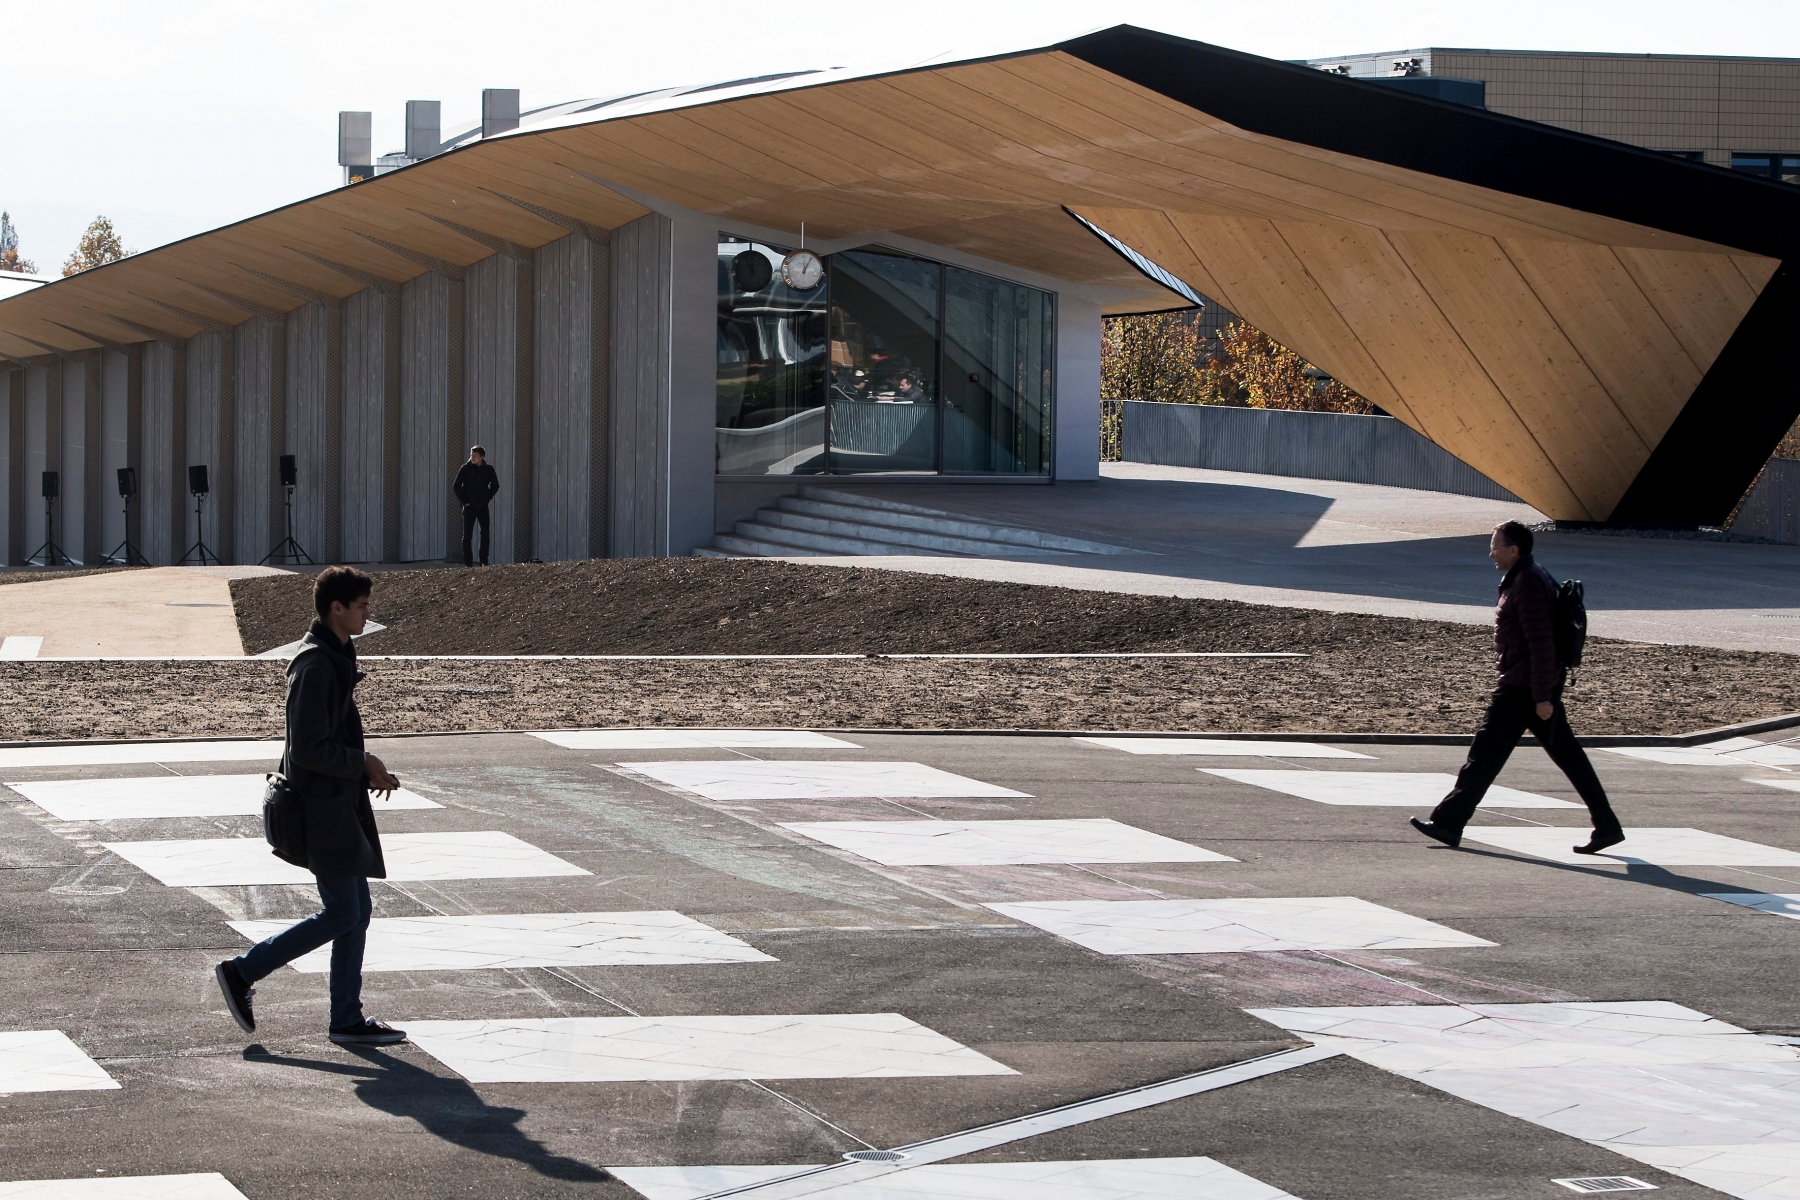 Des personnes marchent devant le le batiment ArtLab lors de l'inauguration du nouveau batiment ArtLab sur le site de l'Ecole polytechnique federale de Lausanne, EPFL, ce jeudi, 3 novembre 2016, a Lausanne. L'ArtLab s'articule en trois partie, la premiere dedie a l'accueil des visiteurs du campus, presentant les grands travaux de recherche de l'EPFL, la deuxieme, culturel, abritant un espace d'exposition susceptible d'accueillir les developpements museographiques les plus innovants, la troisieme dedie a la conservation et a la valorisation des archives du Montreux Jazz Festival. (KEYSTONE/Jean-Christophe Bott) SUISSE EPFL ARTLAB